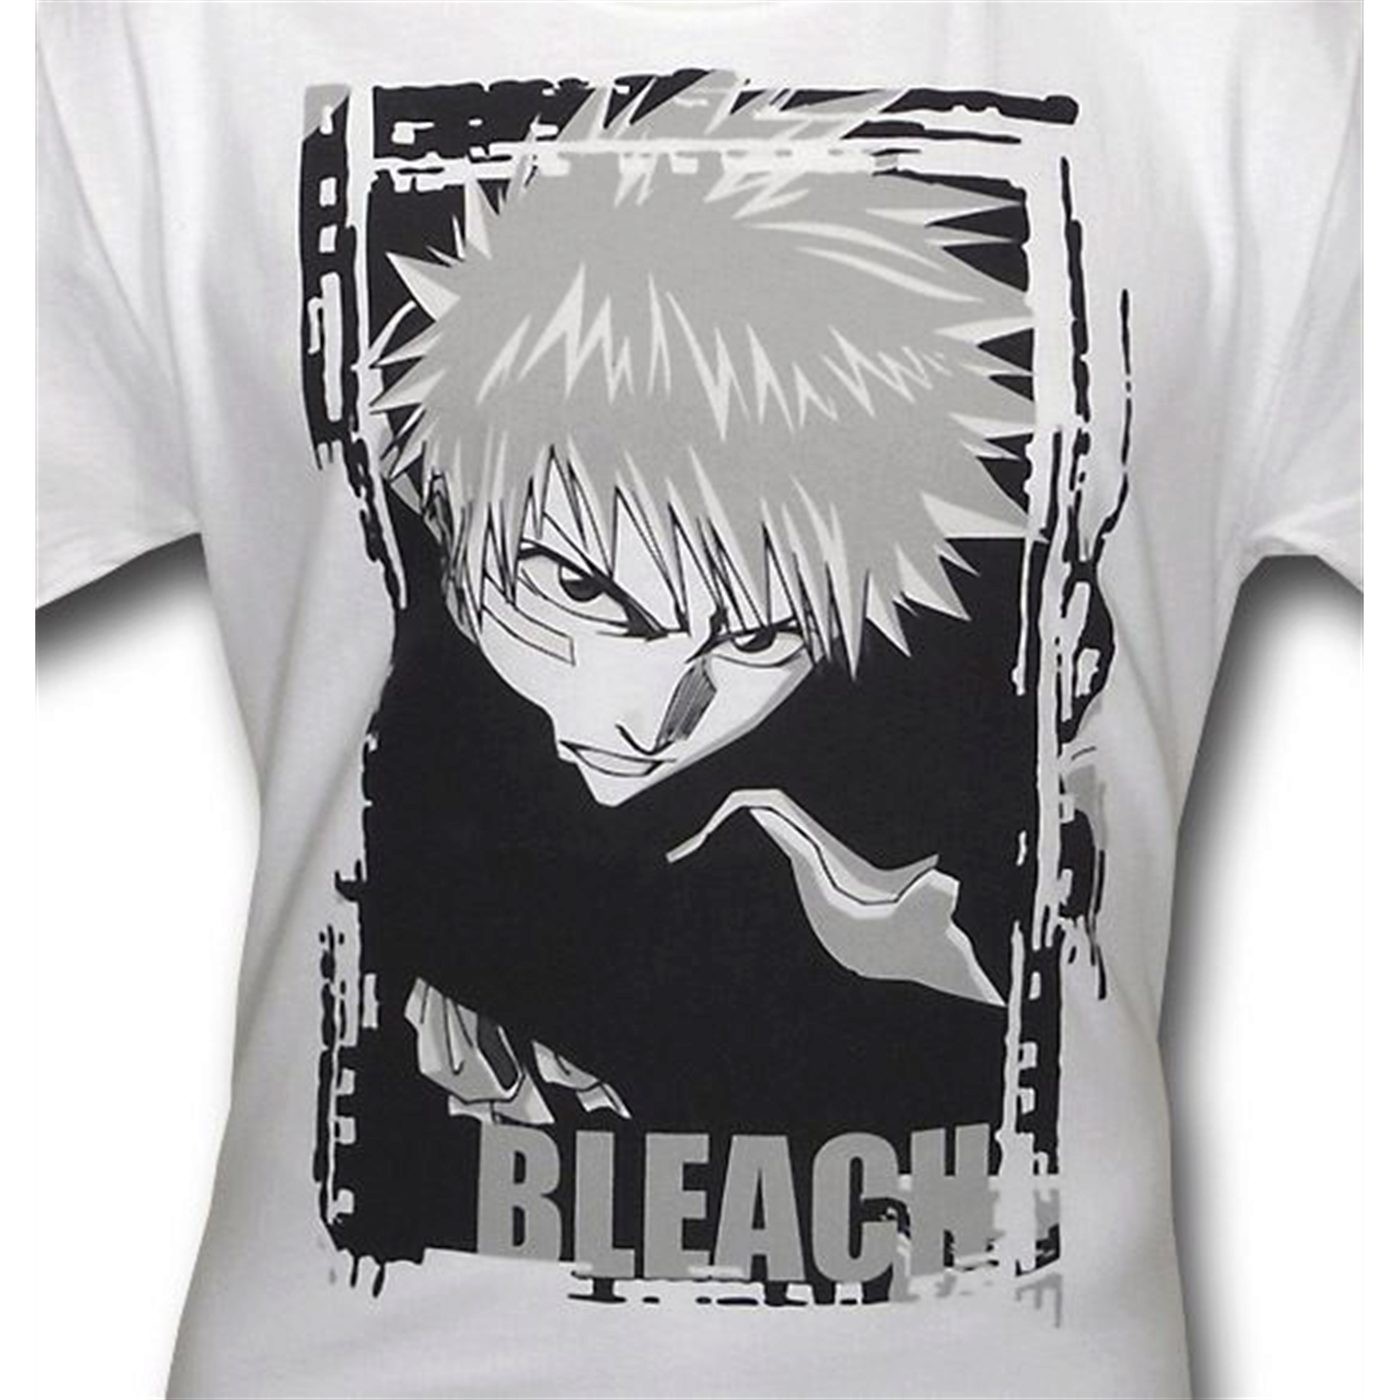 Bleach Ichigo Black and White T-Shirt